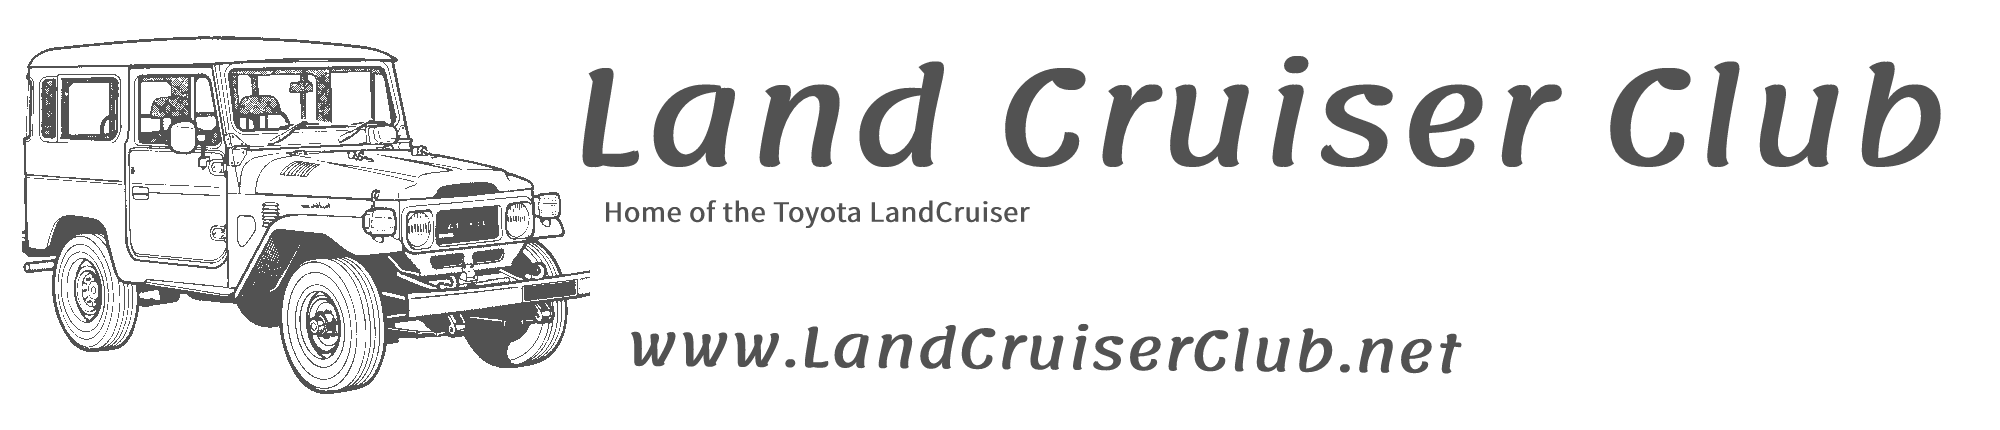 Land Cruiser Club